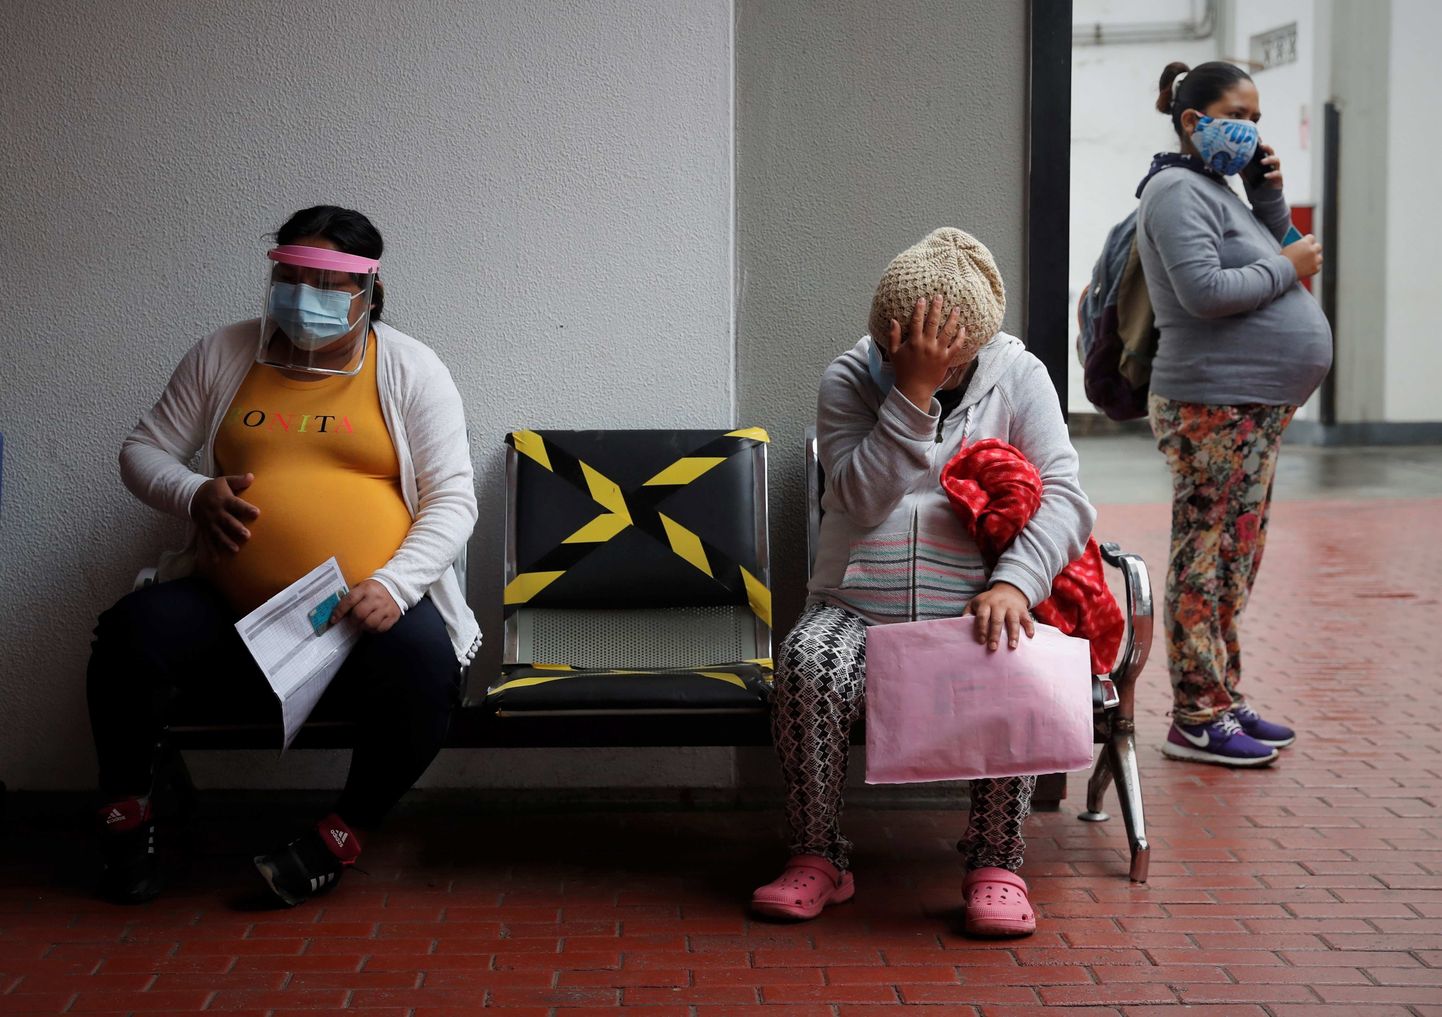 Lapseootel peruulannad Lima riikliku perinataalkeskuse ooturuumis 27. juulil 2020. Koroonaviiruse epitsentris Kesk-Ameerikas on rasedatele kehtestatud karantiinireeglid, mis võimaldavad liikuda kodust välja vaid äärmisel vajadusel, näiteks arsti juurde minekuks.